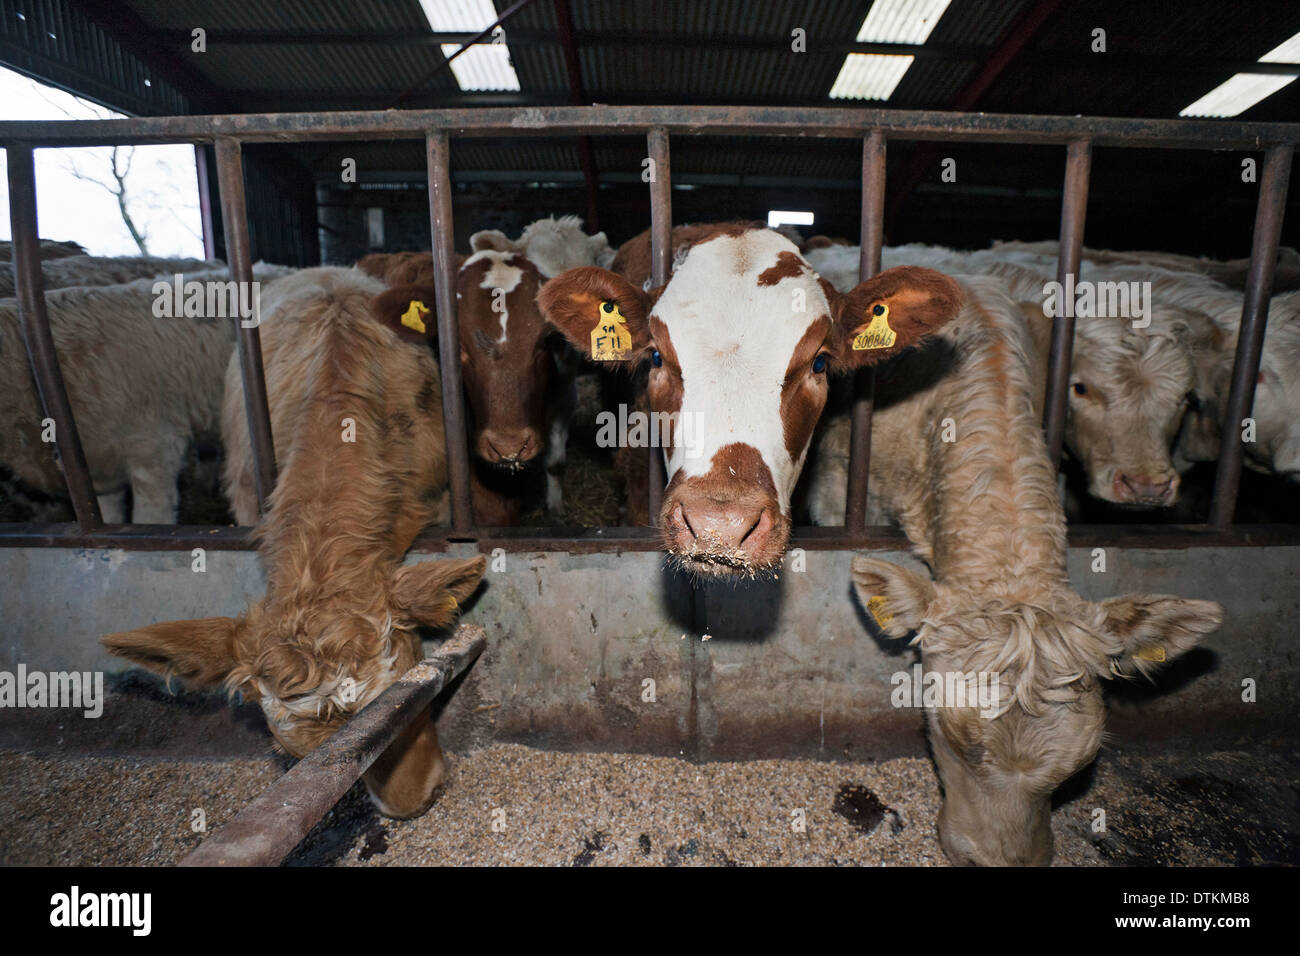 L'alimentation des vaches dans une étable dans une ferme dans la région des Scottish Borders. Banque D'Images